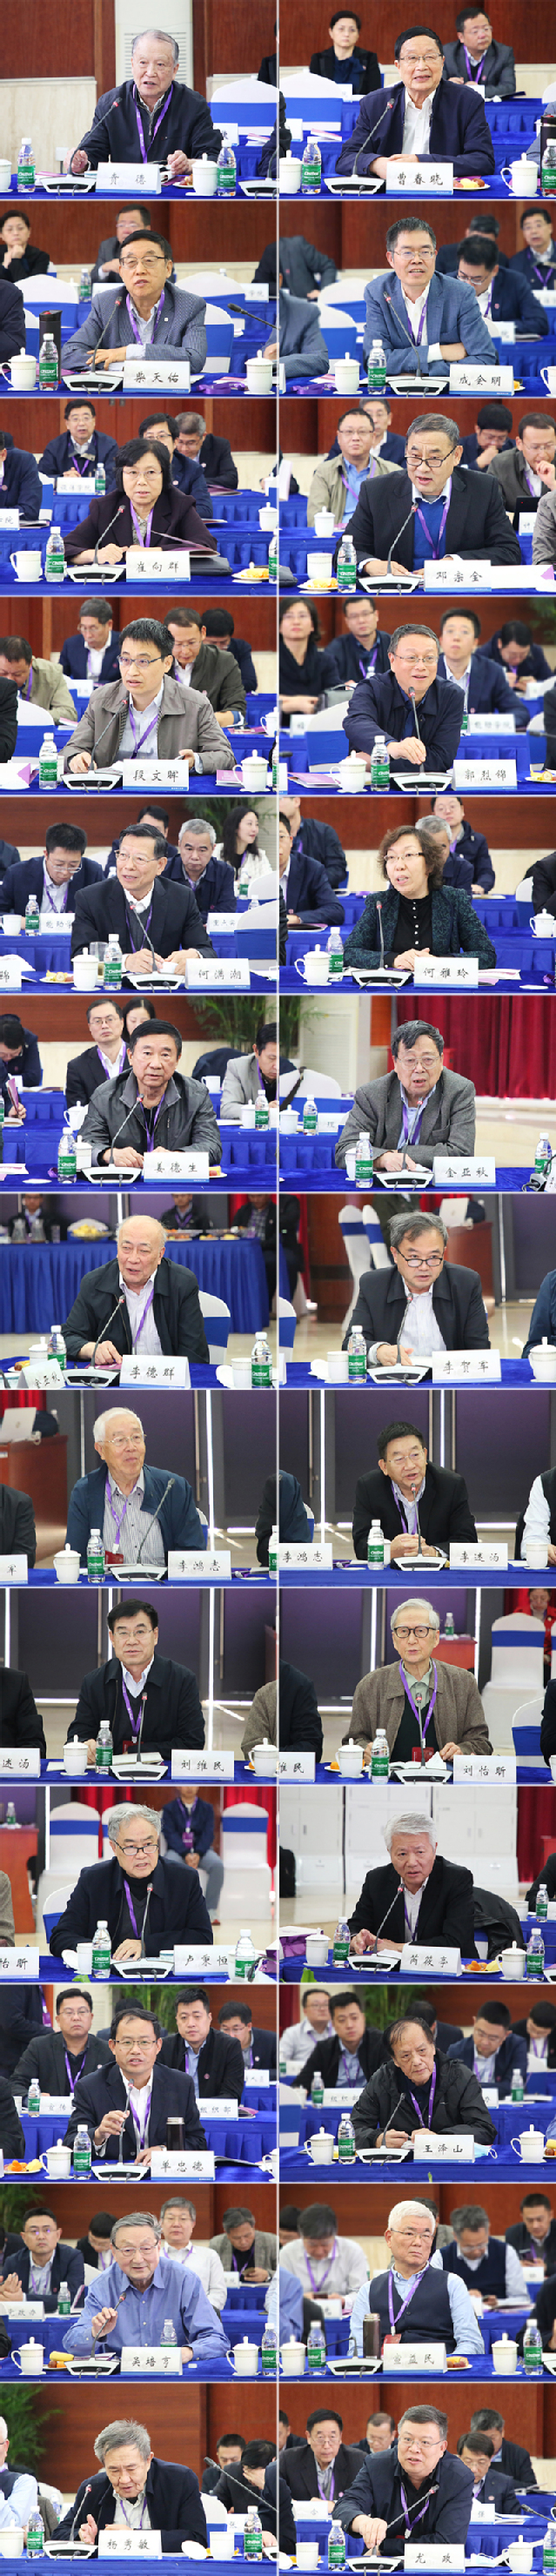 学校举行第四届专家咨询会，南京理工大学